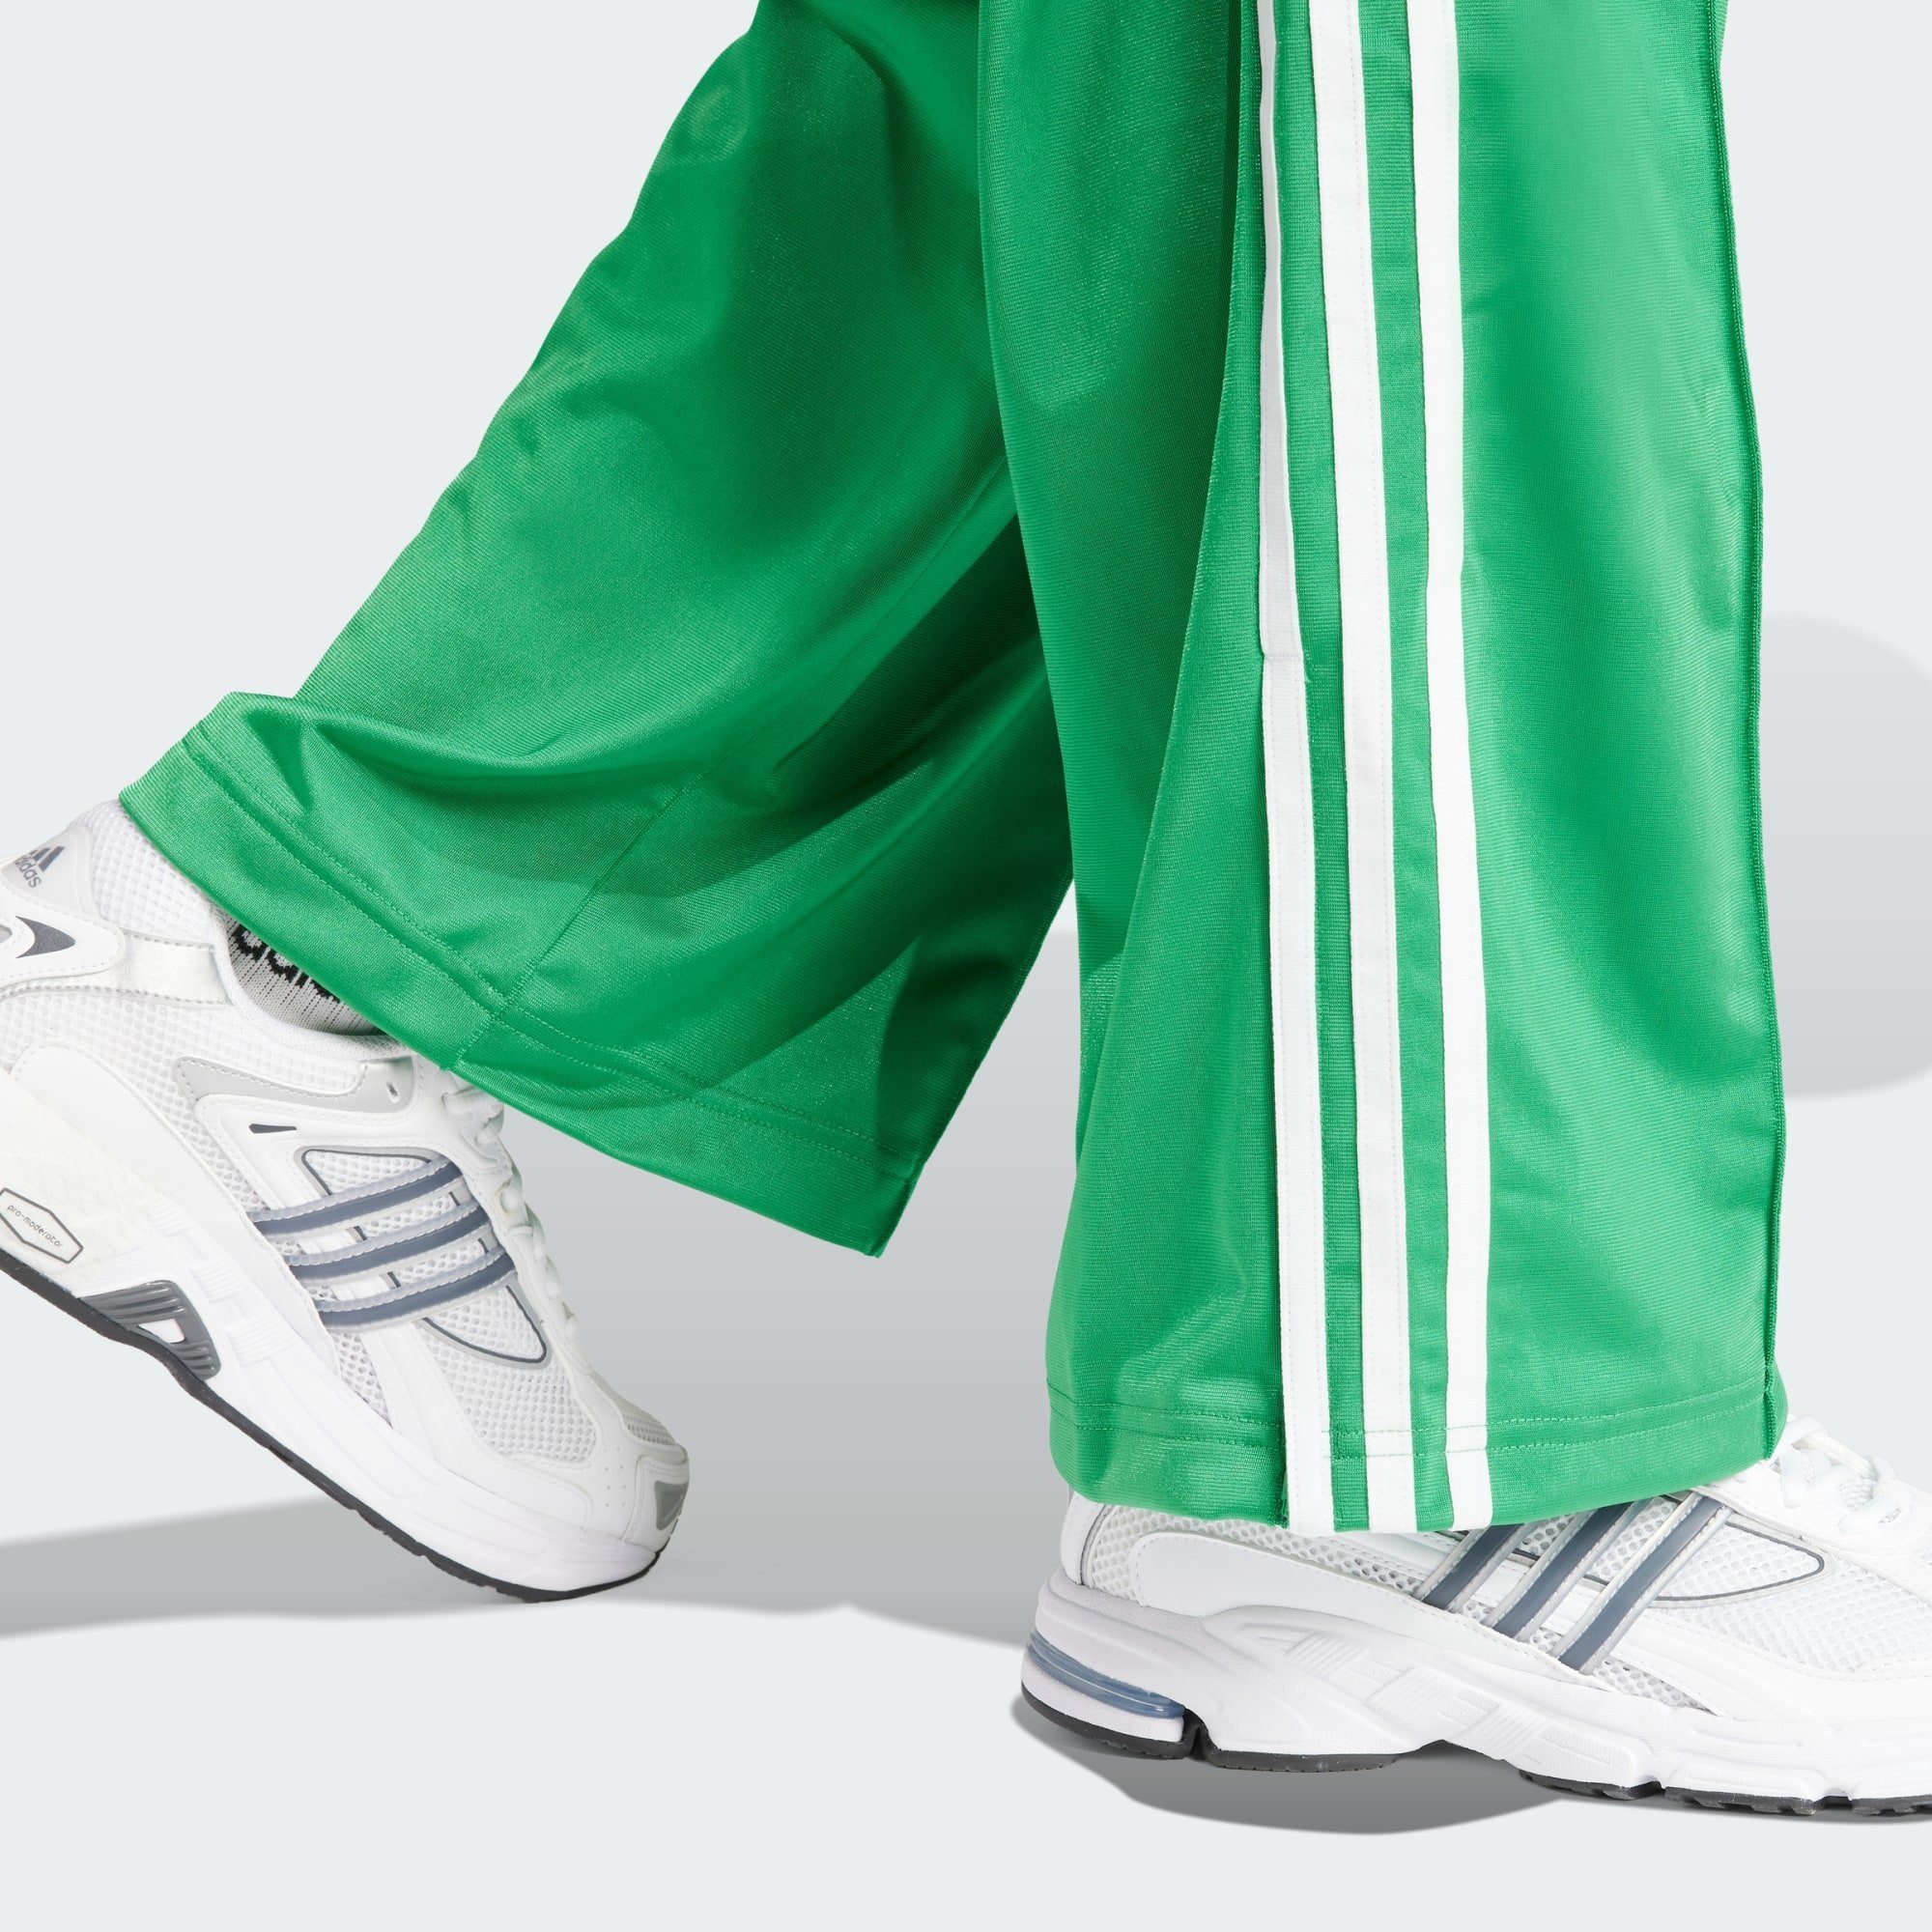 FIREBIRD Green Jogginghose TRAININGSHOSE adidas Originals LOOSE